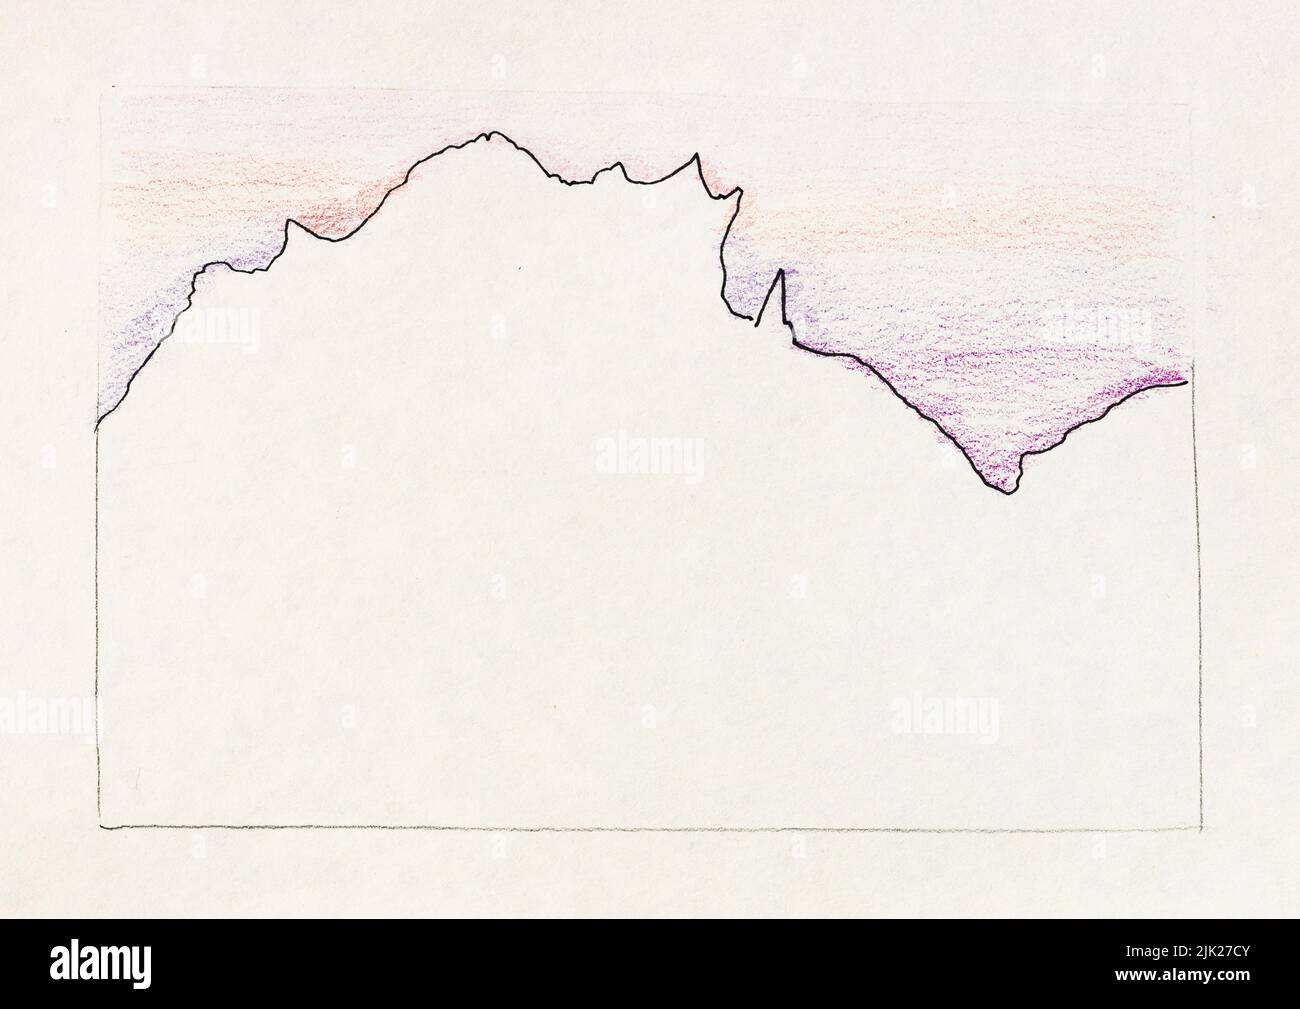 Bosquejo del horizonte de la ciudad de Lecco con la montaña, Italia bajo el cielo de la puesta de sol púrpura en mano dibujado con pluma negra y lápices de color sobre la vieja textura blanca Foto de stock